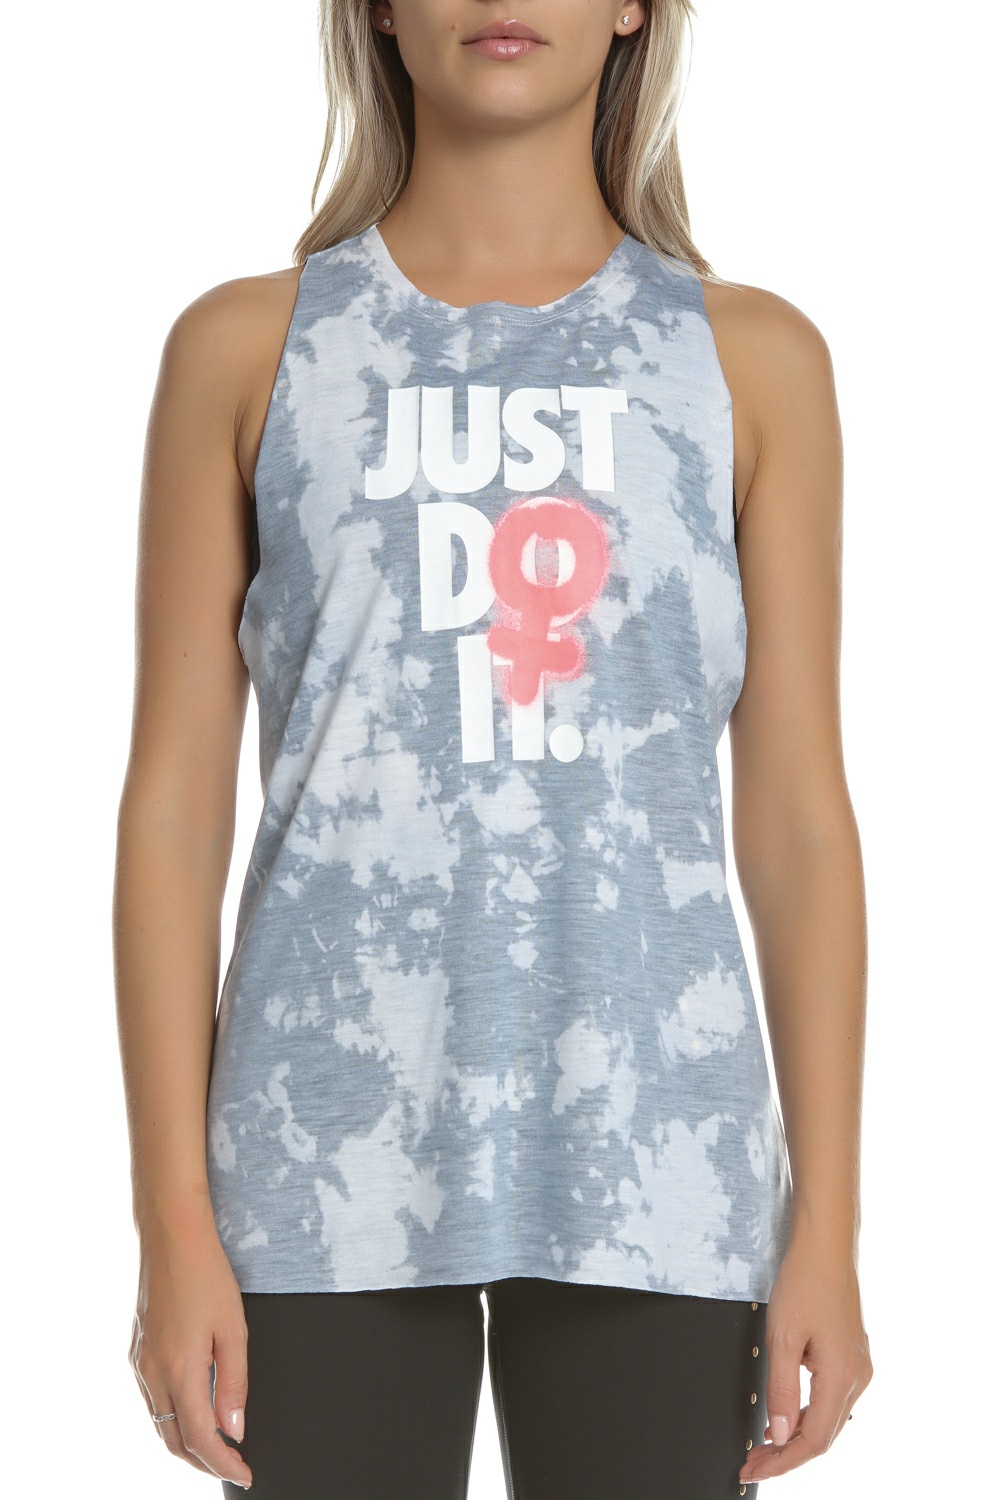 NIKE - Γυναικείο αμάνικο μπλουζάκι Nike Rebel γκρι Γυναικεία/Ρούχα/Αθλητικά/T-shirt-Τοπ